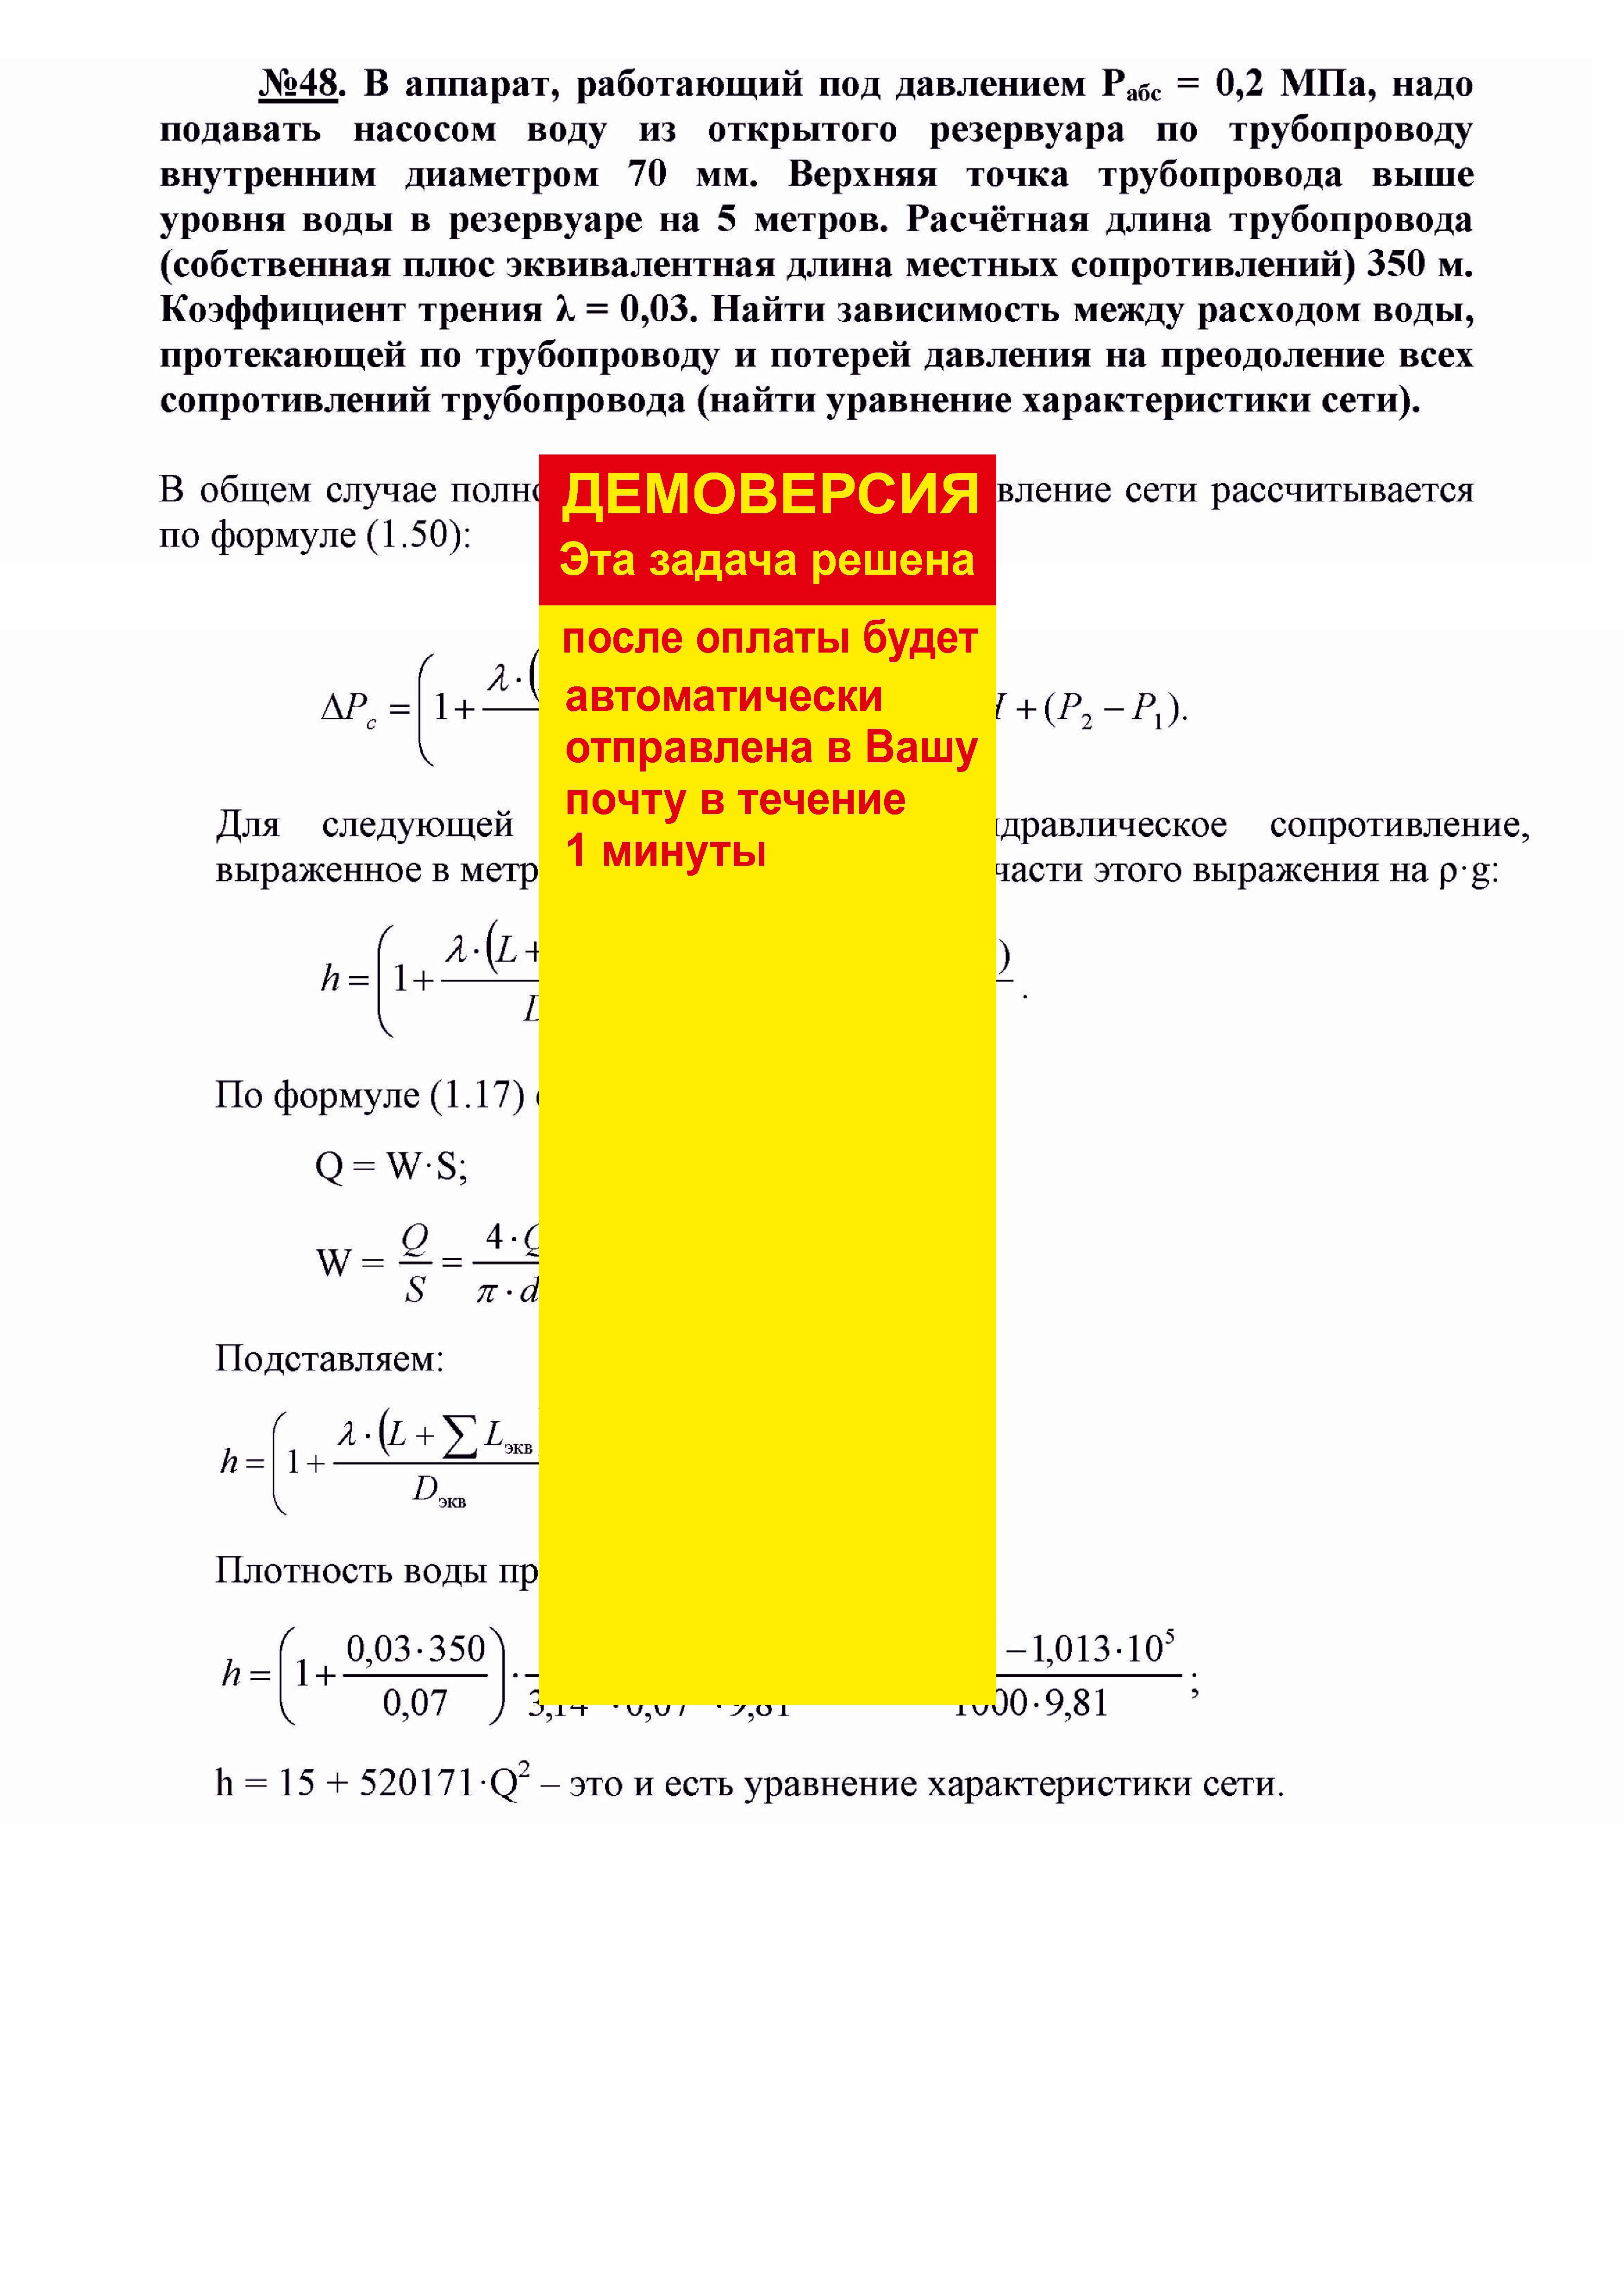 Решение задачи 1.48 по ПАХТ из задачника Павлова Романкова Носкова